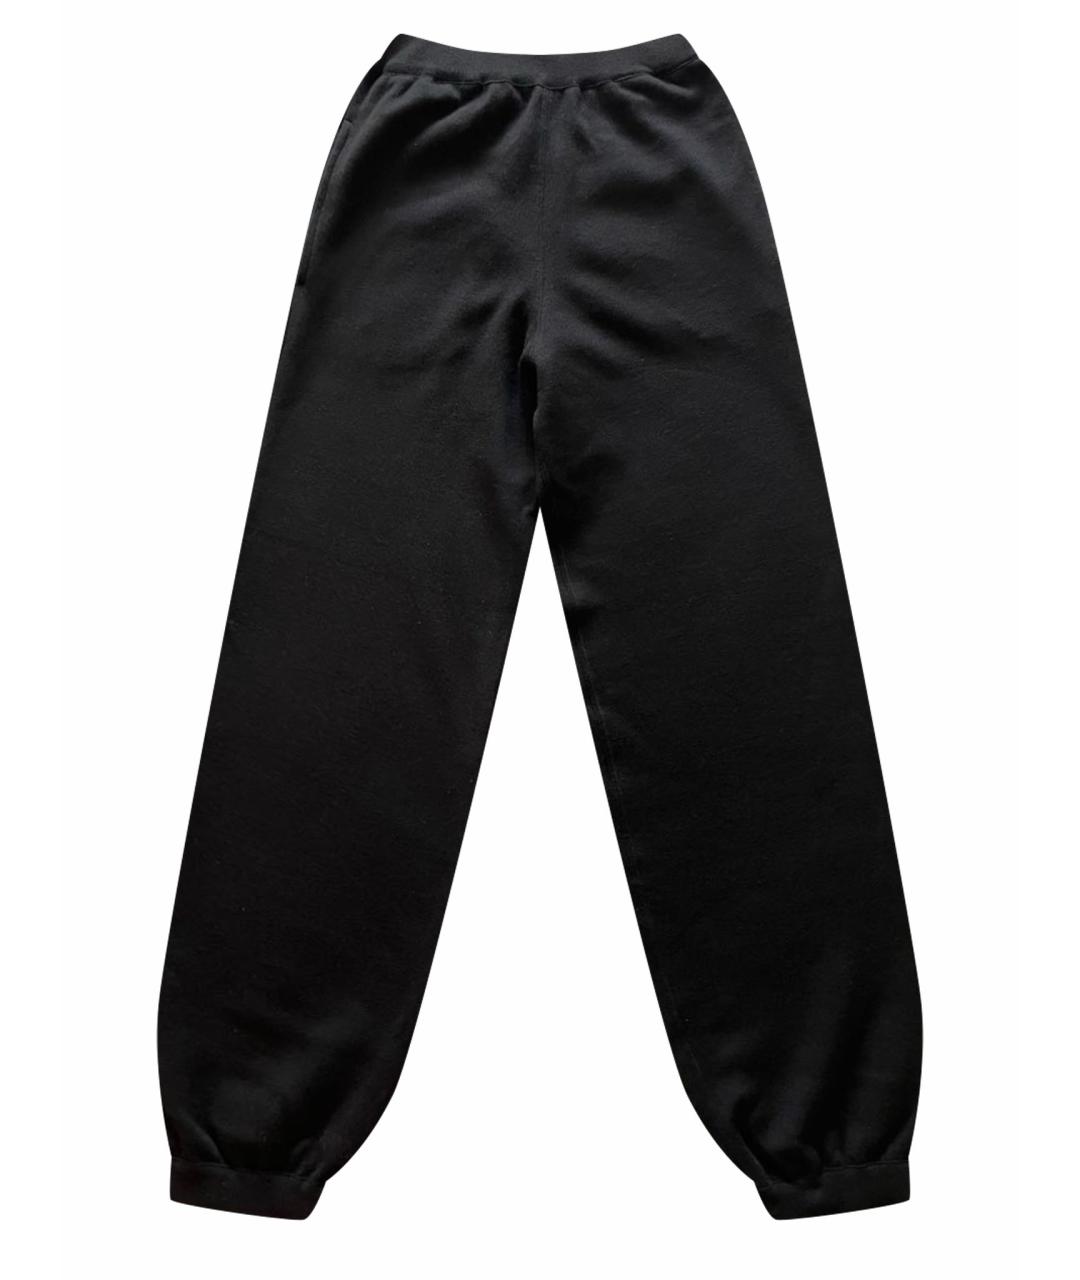 MRZ Черные шерстяные спортивные брюки и шорты, фото 1